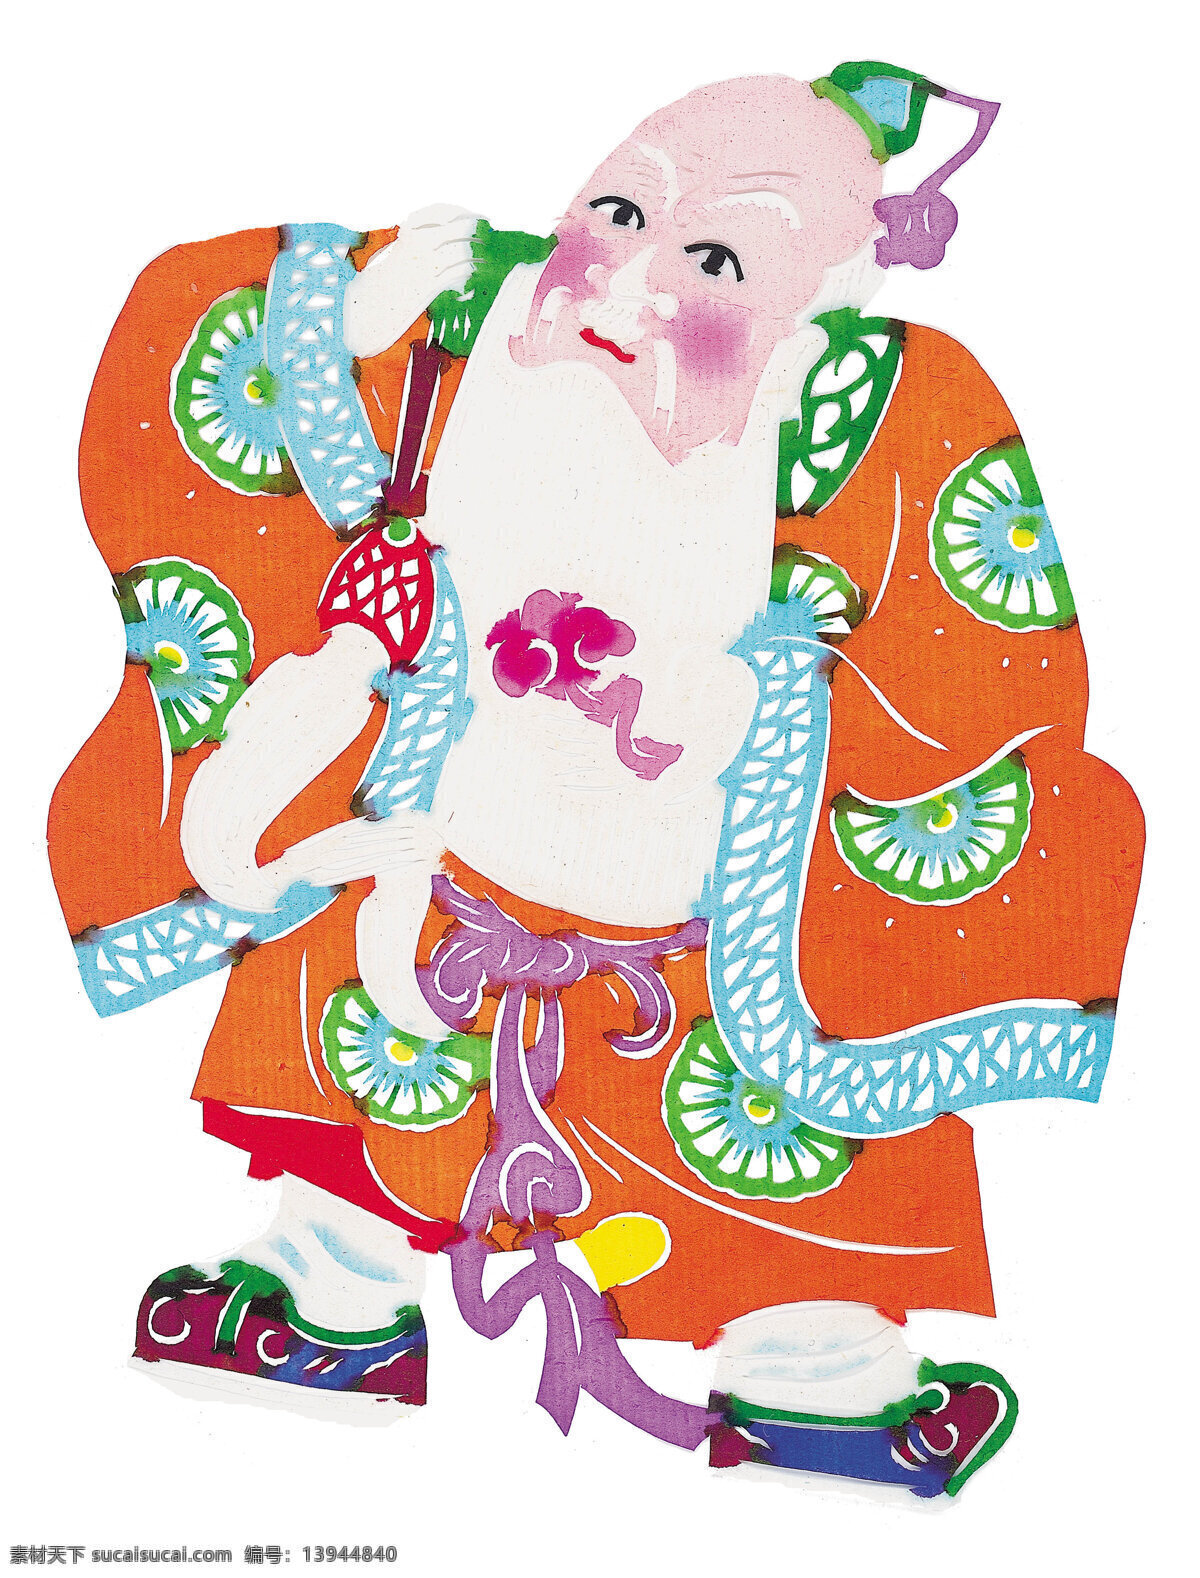 太上老君 画像 太上老君画像 中国 风 传统 花纹 传统图案 年画 民间画 民间艺术 剪纸艺术 文化艺术